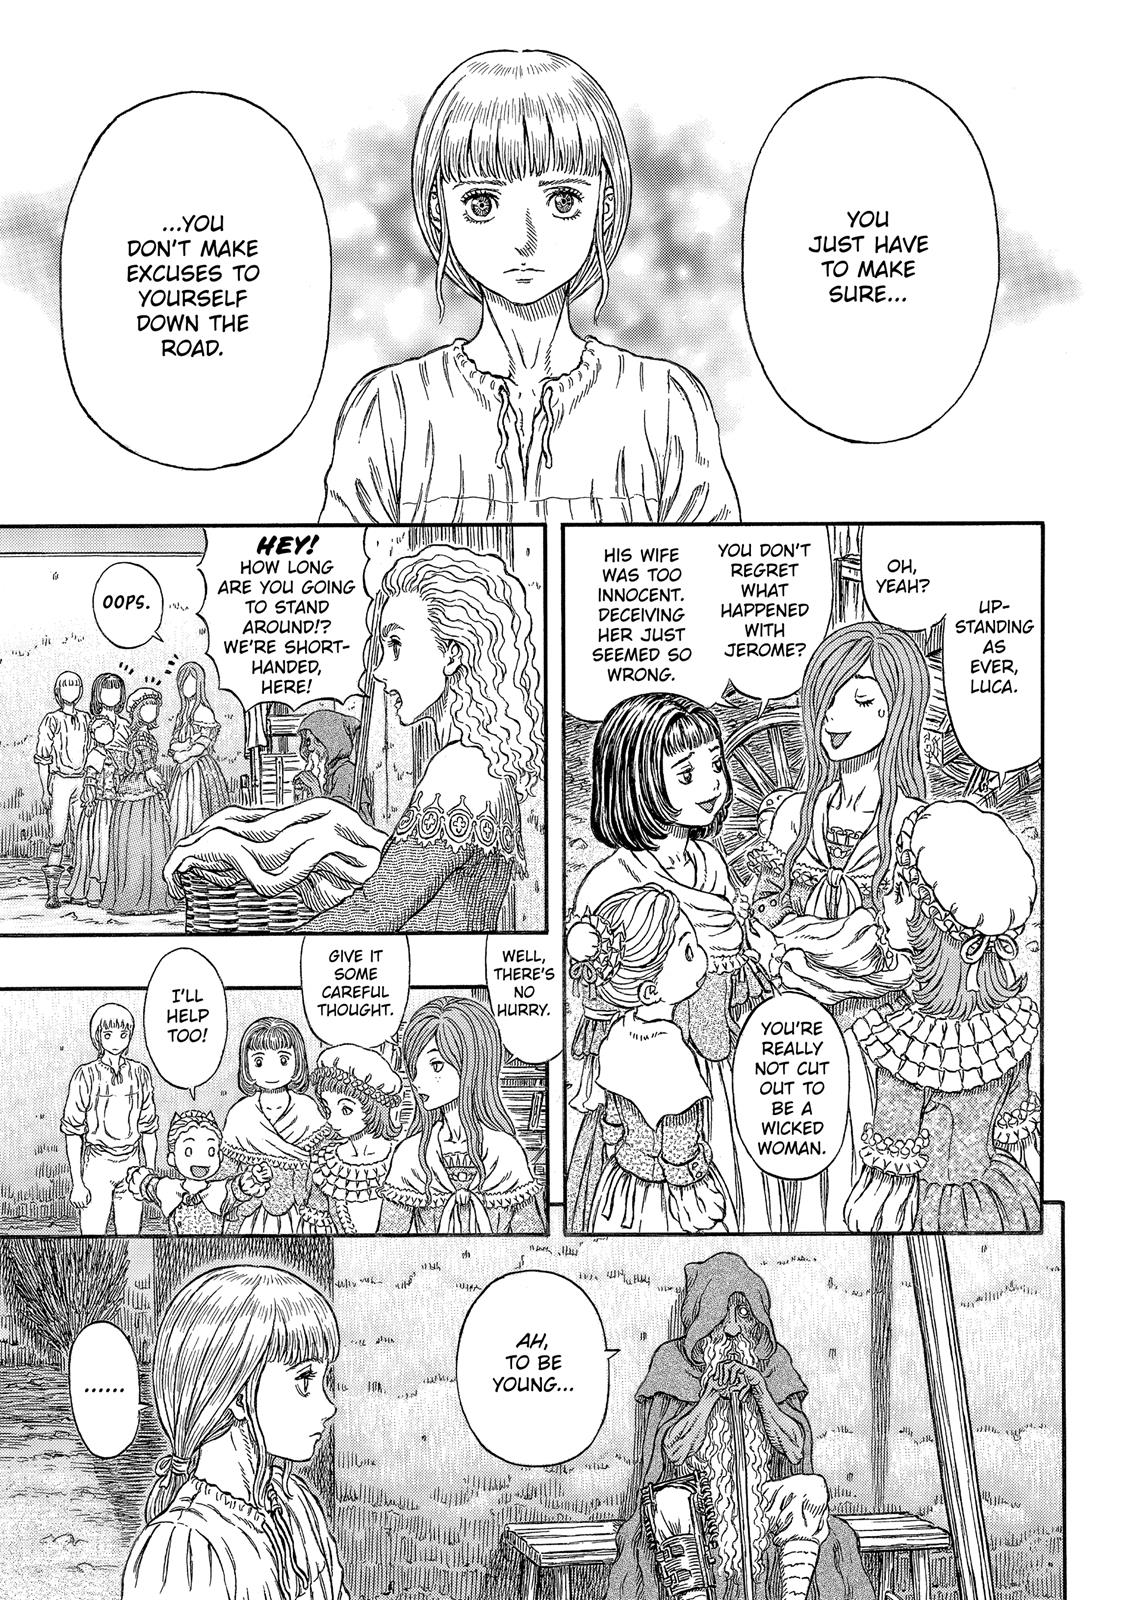 Berserk Manga Chapter 338 image 12